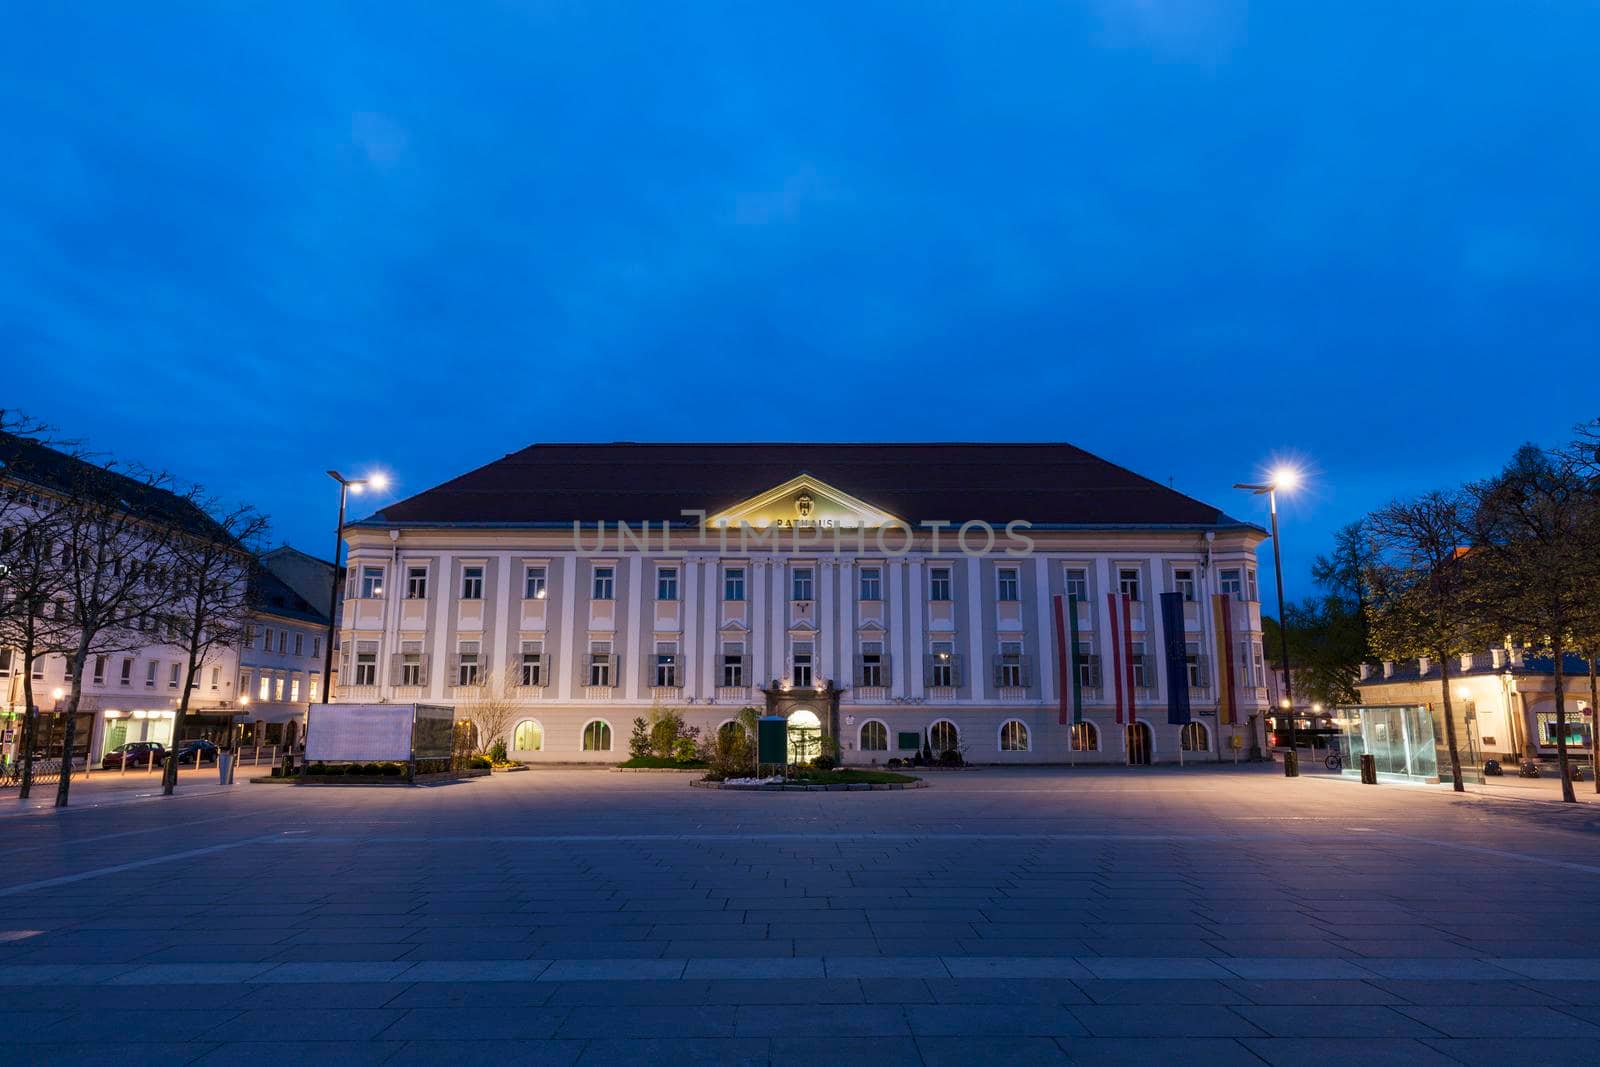 Neues Rathaus on Neuer Platz in Klagenfurt by benkrut